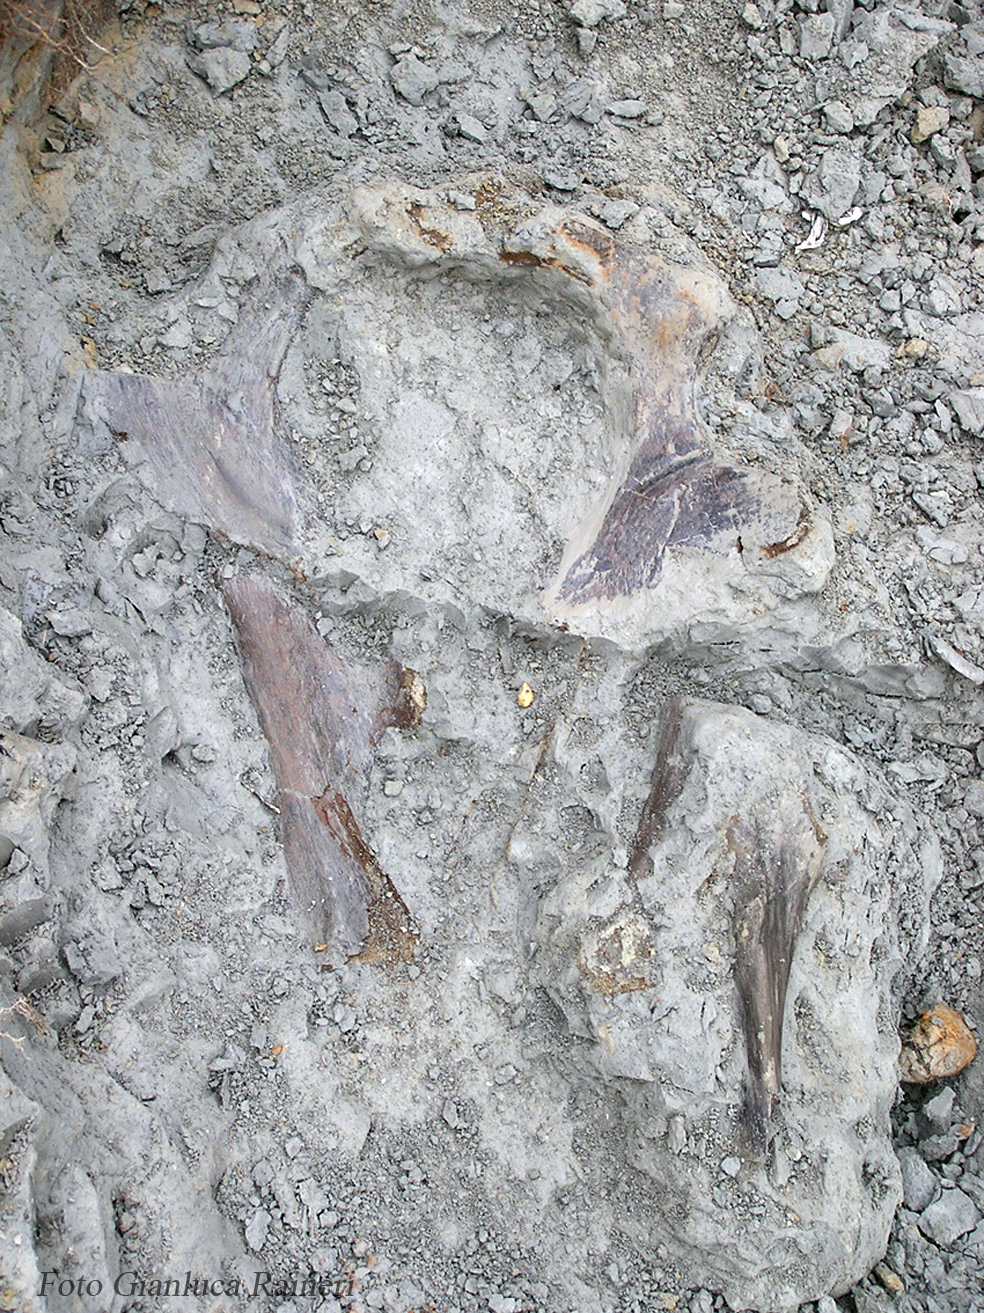 Recupero di resti scheletrici di Rinoceronte, bacino e femori - foto di Gianluca Raineri